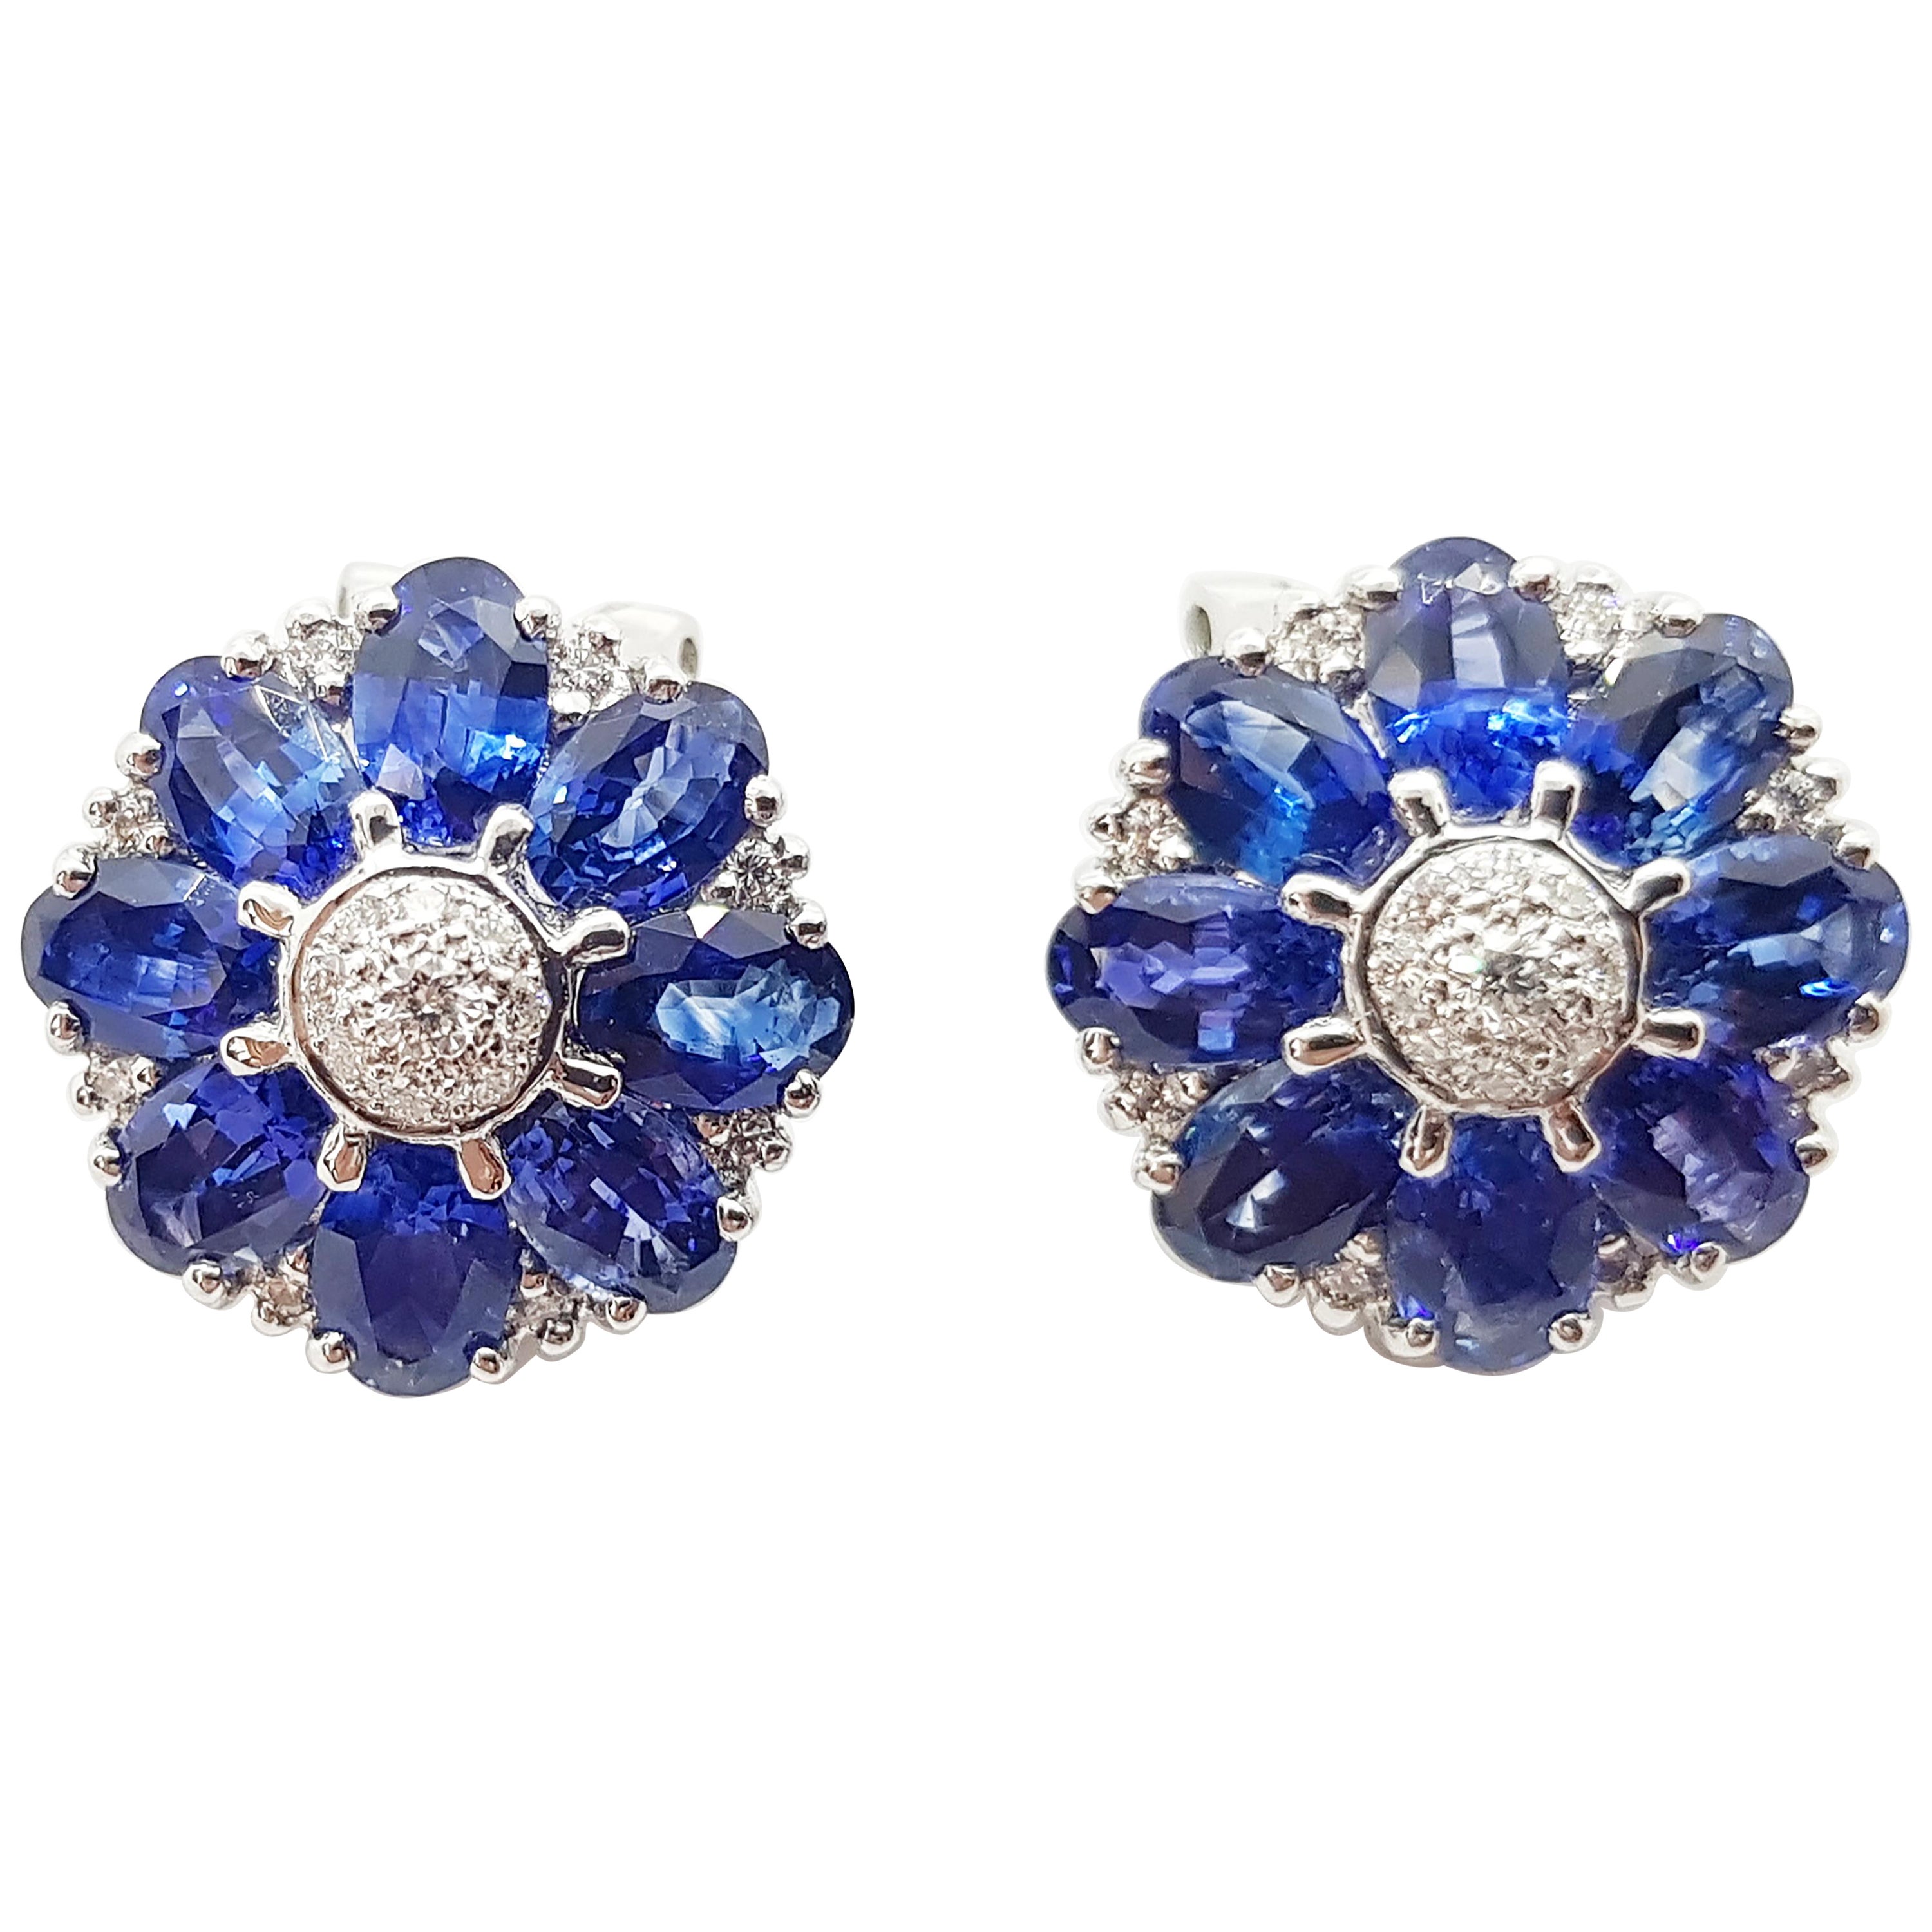 Blue Sapphire with Diamond Flower Earrings Set in 18 Karat Gold ...